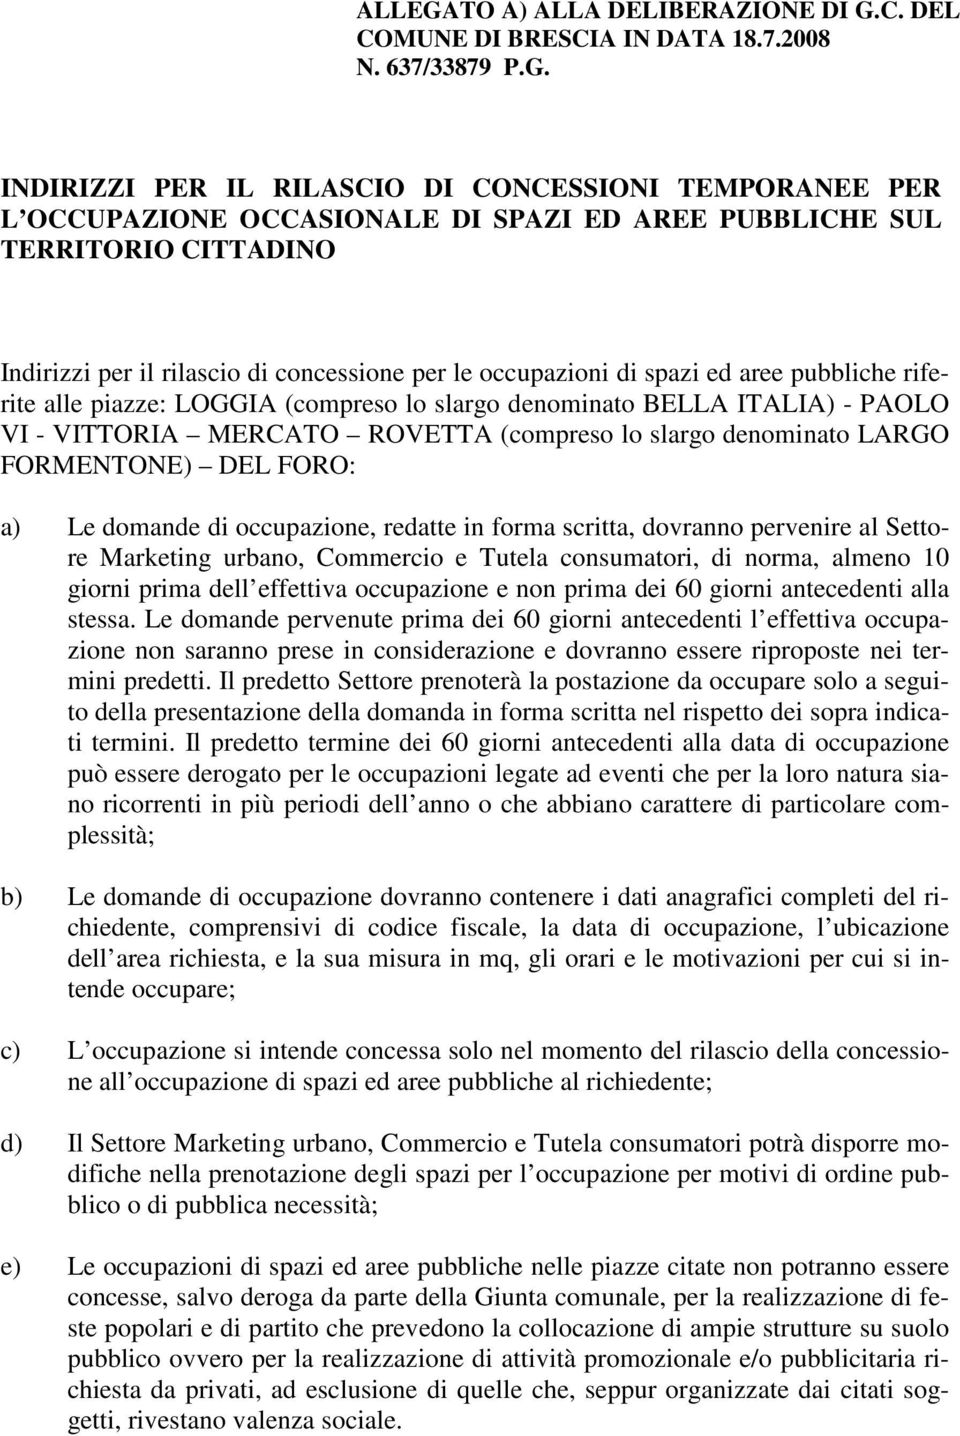 C. DEL COMUNE DI BRESCIA IN DATA 18.7.2008 N. 637/33879 P.G.